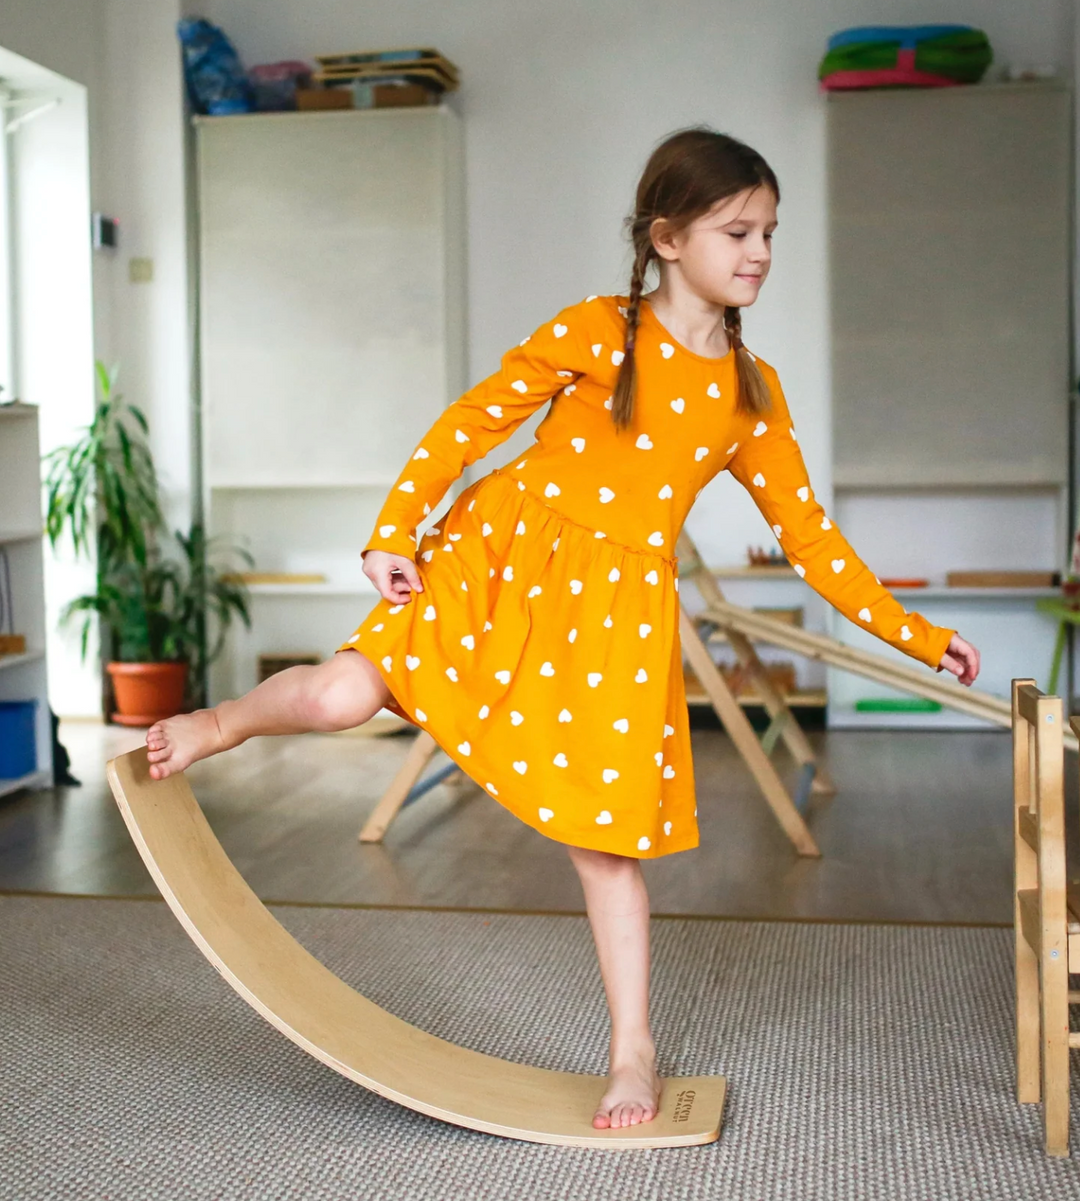 Girl Balancing On A Balance Wobble Board